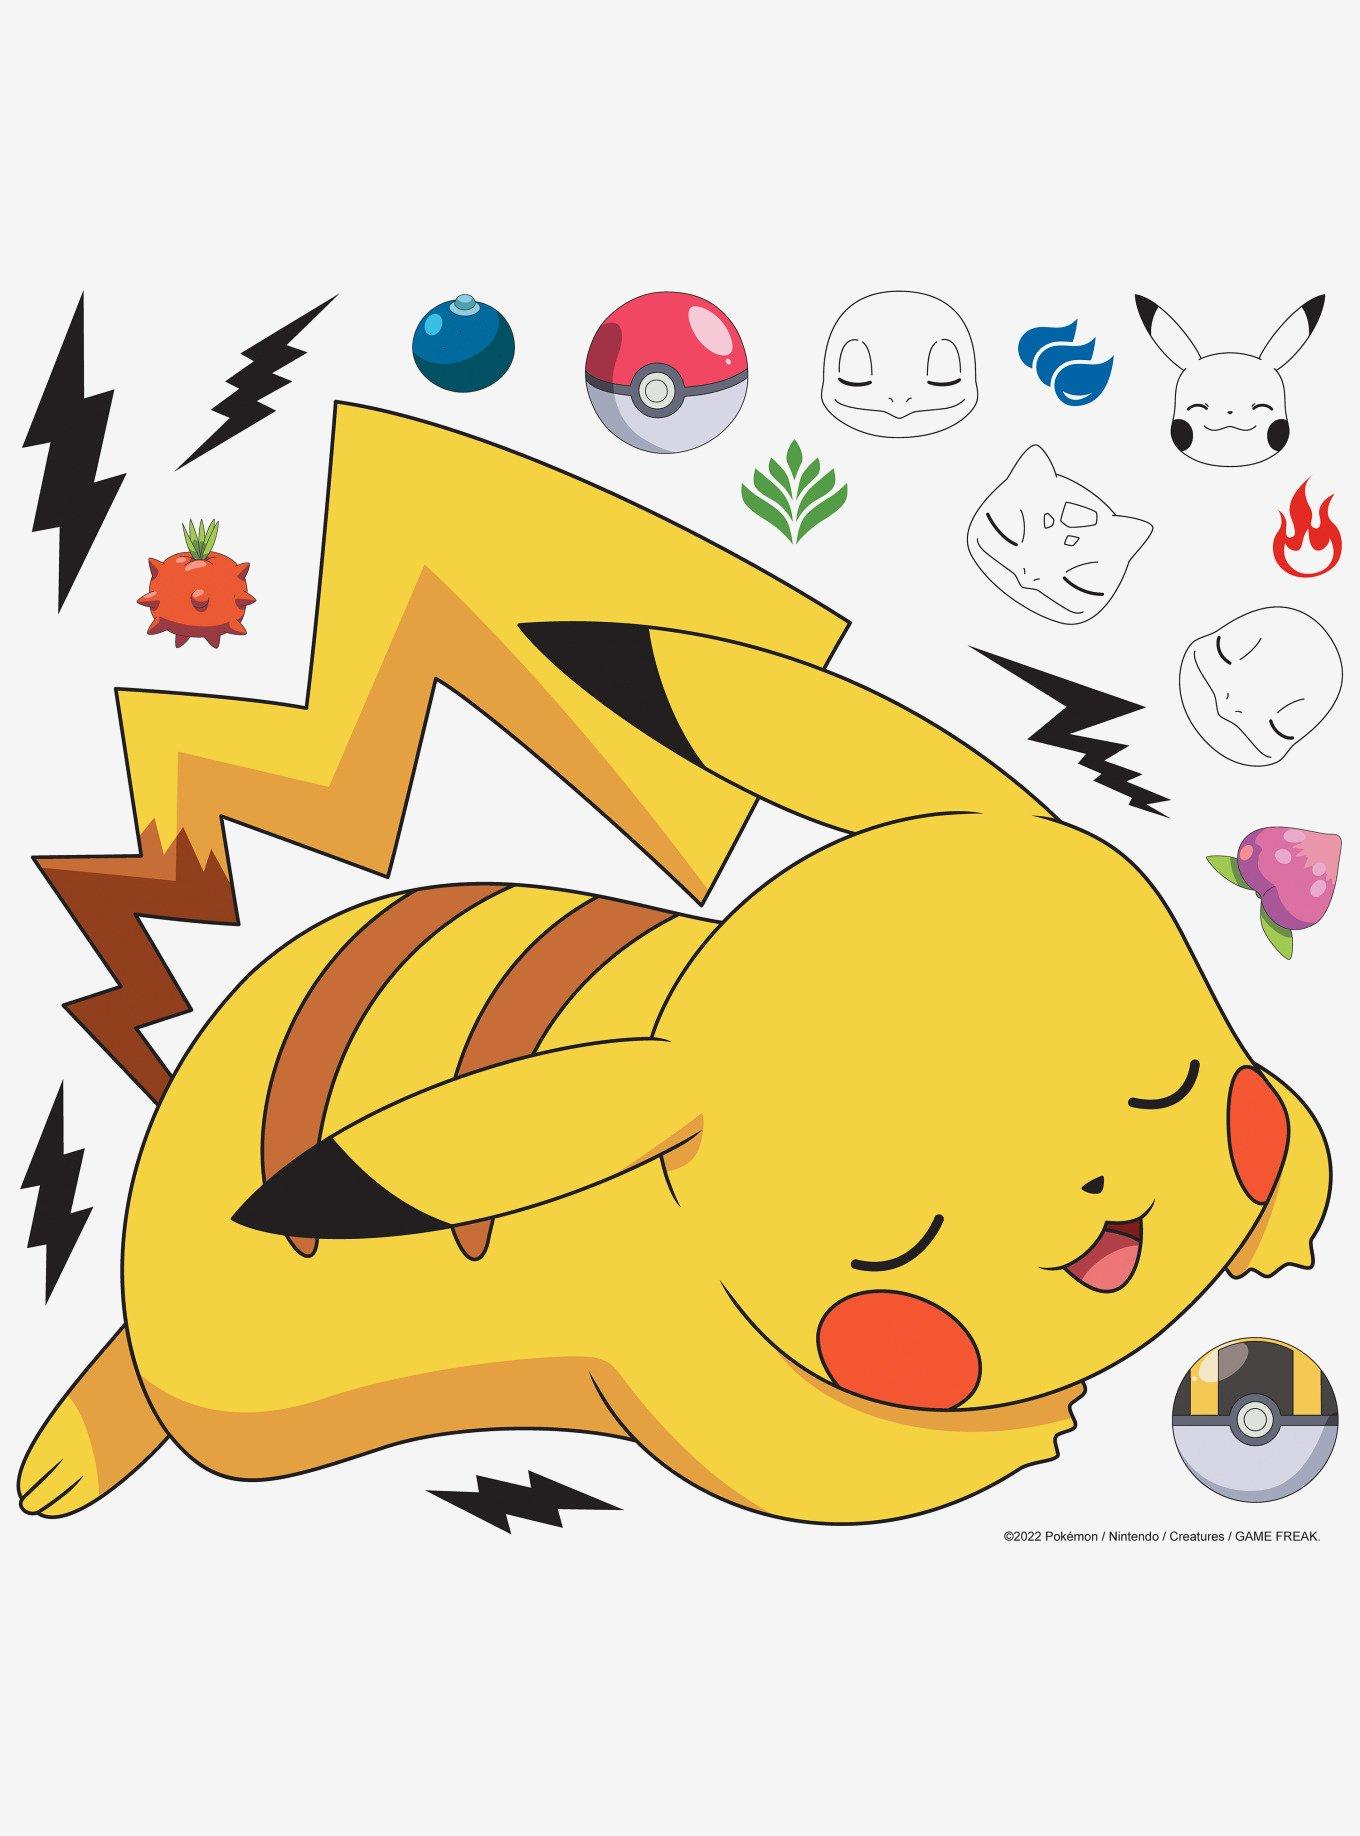 kirby pokemon forms pikachu